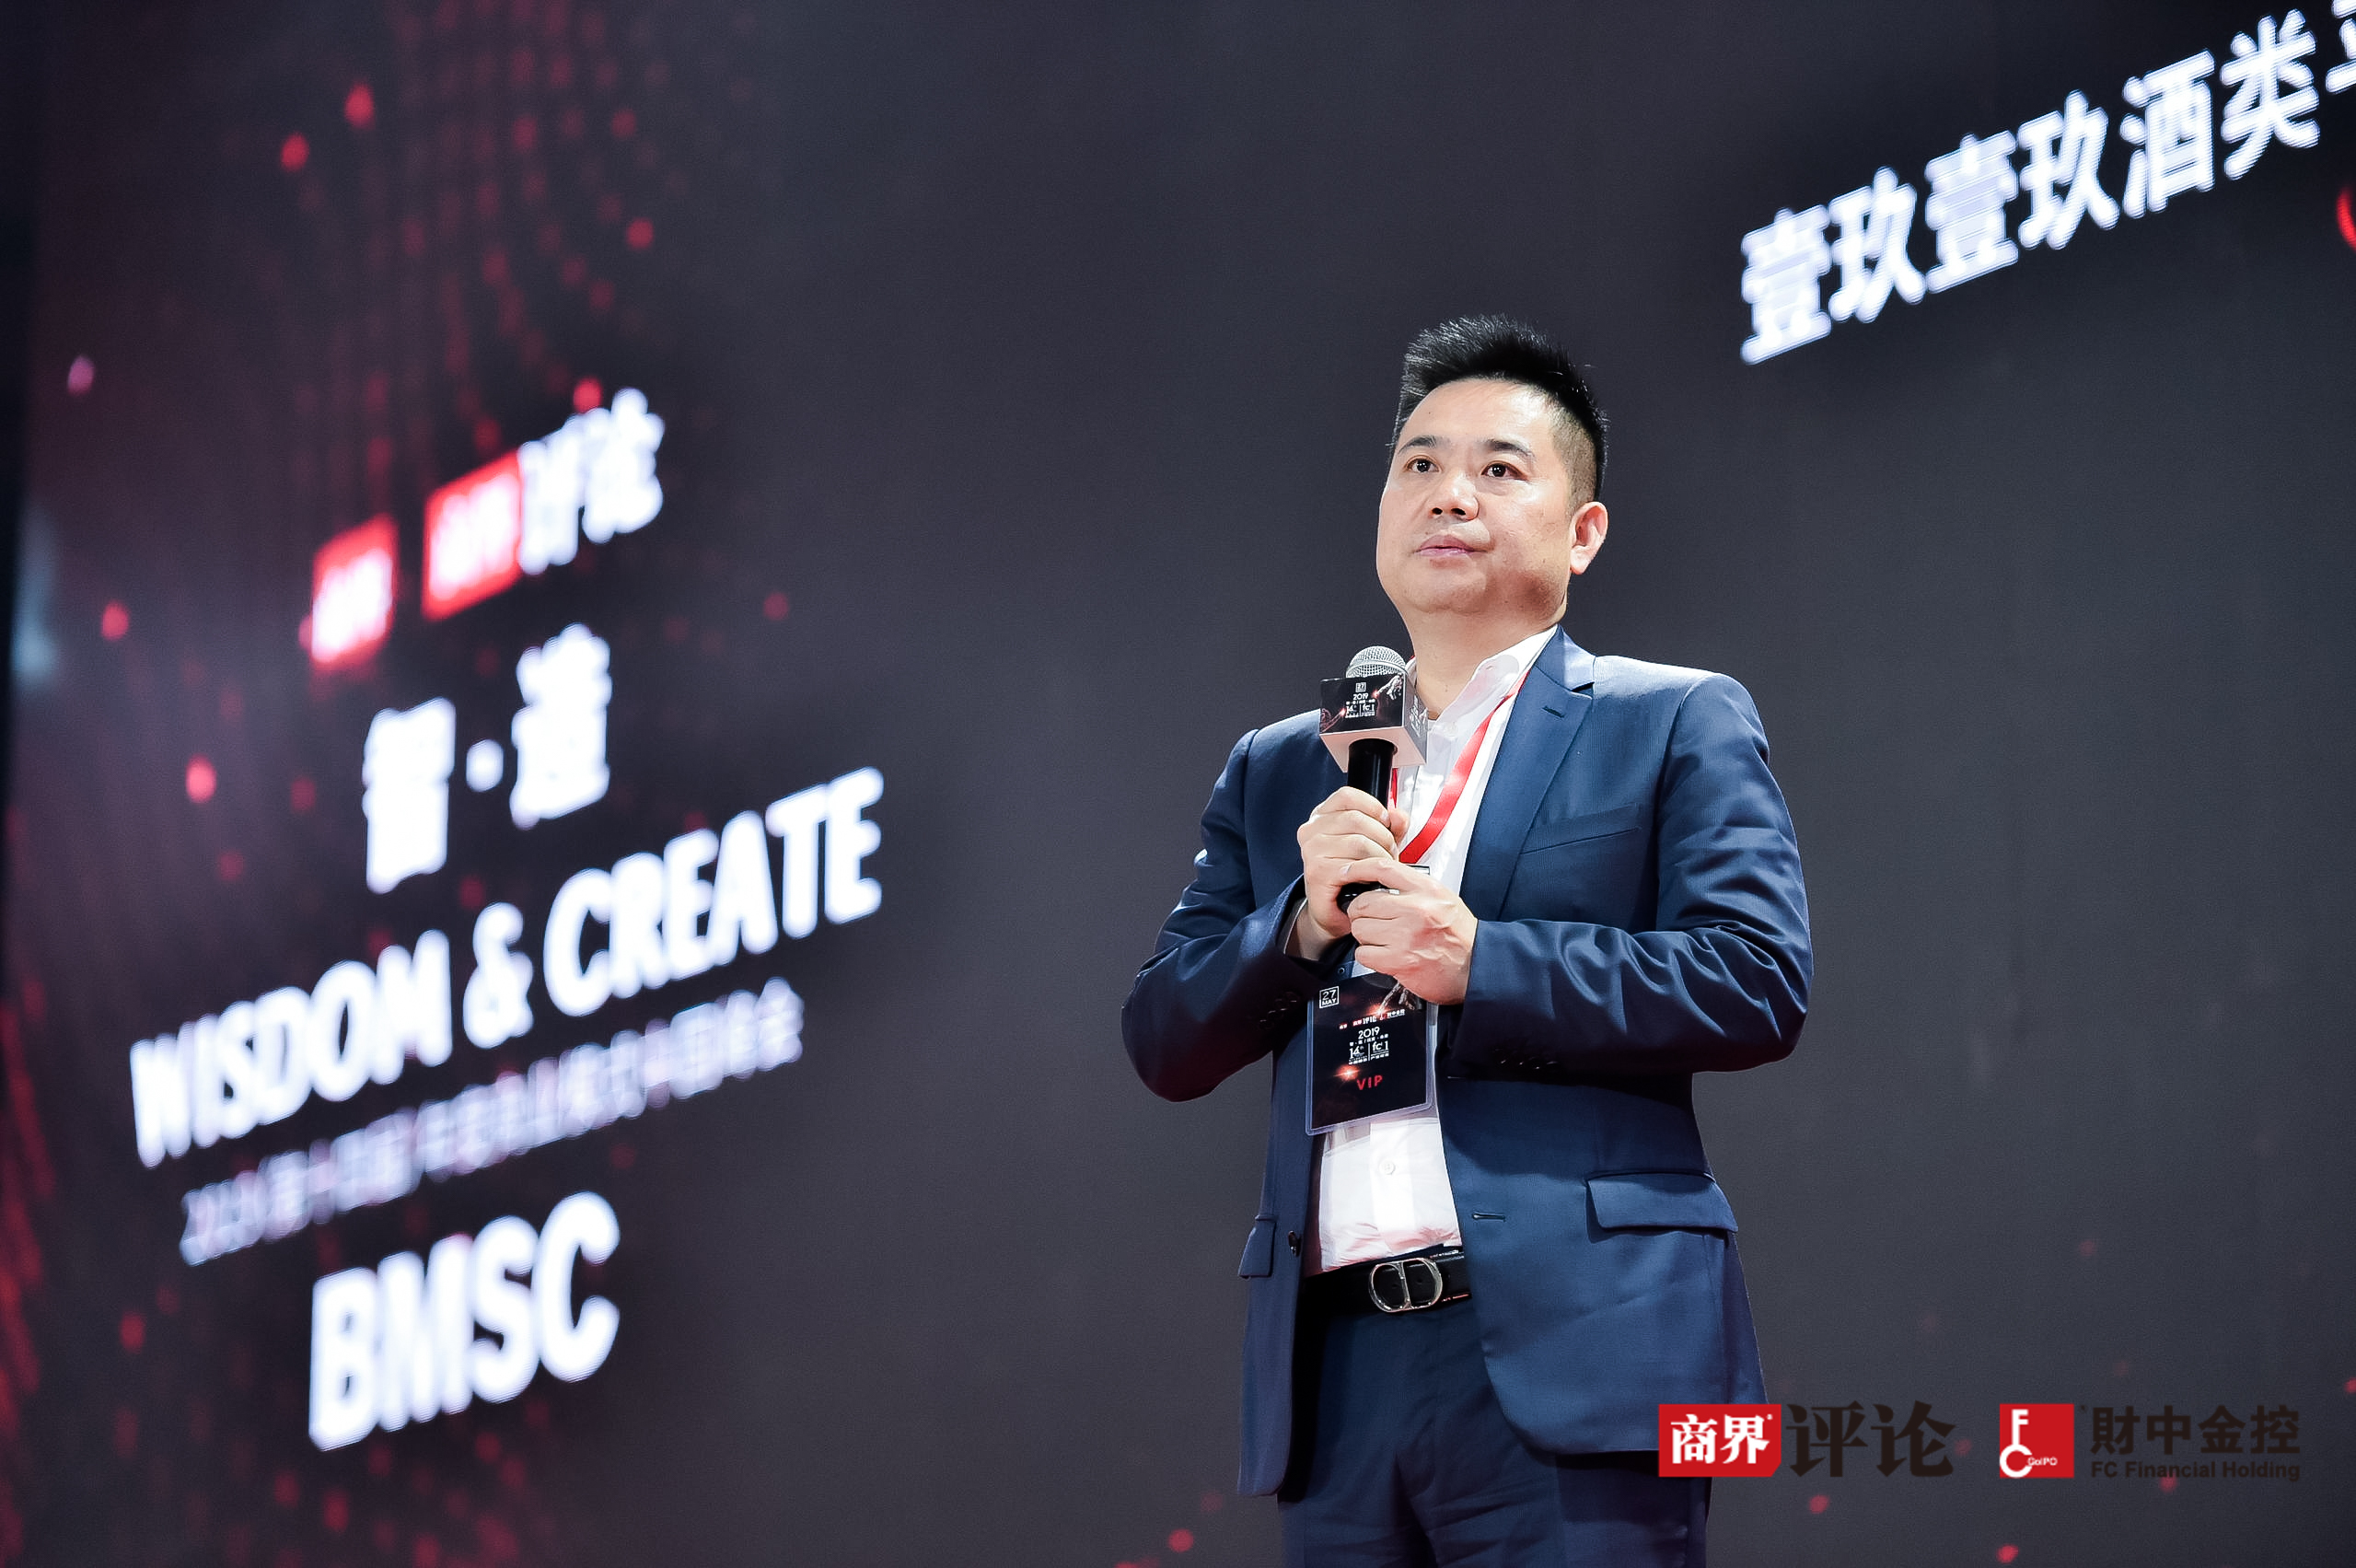 2019年度商业模式中国峰会暨首届财中金控创新赋能产业论坛在沪举行